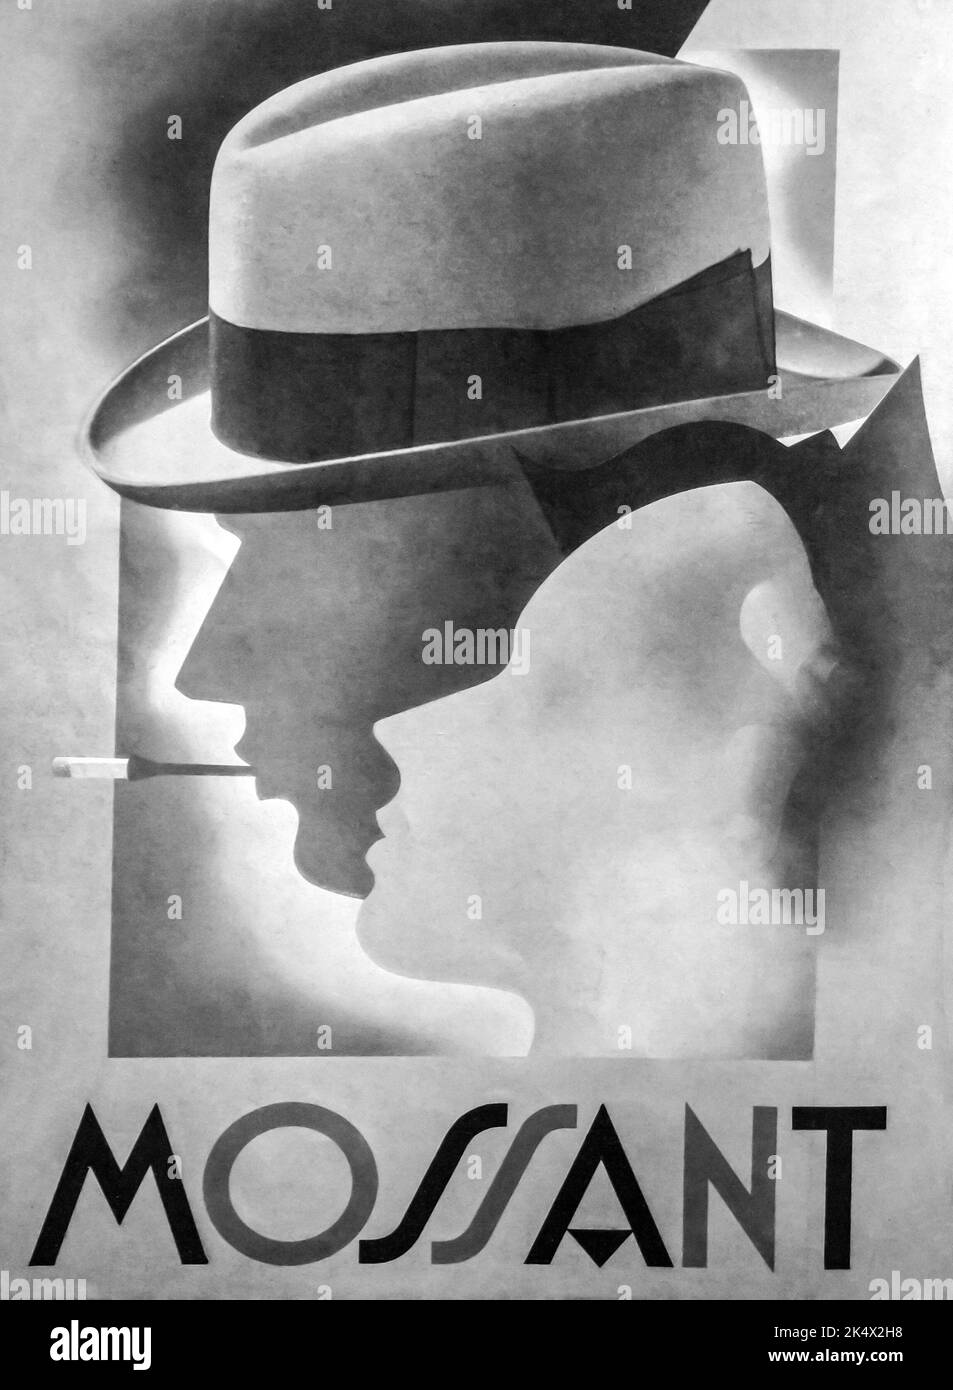 Pubblicità degli anni '30 : cappelli francesi MOSSANT Foto Stock